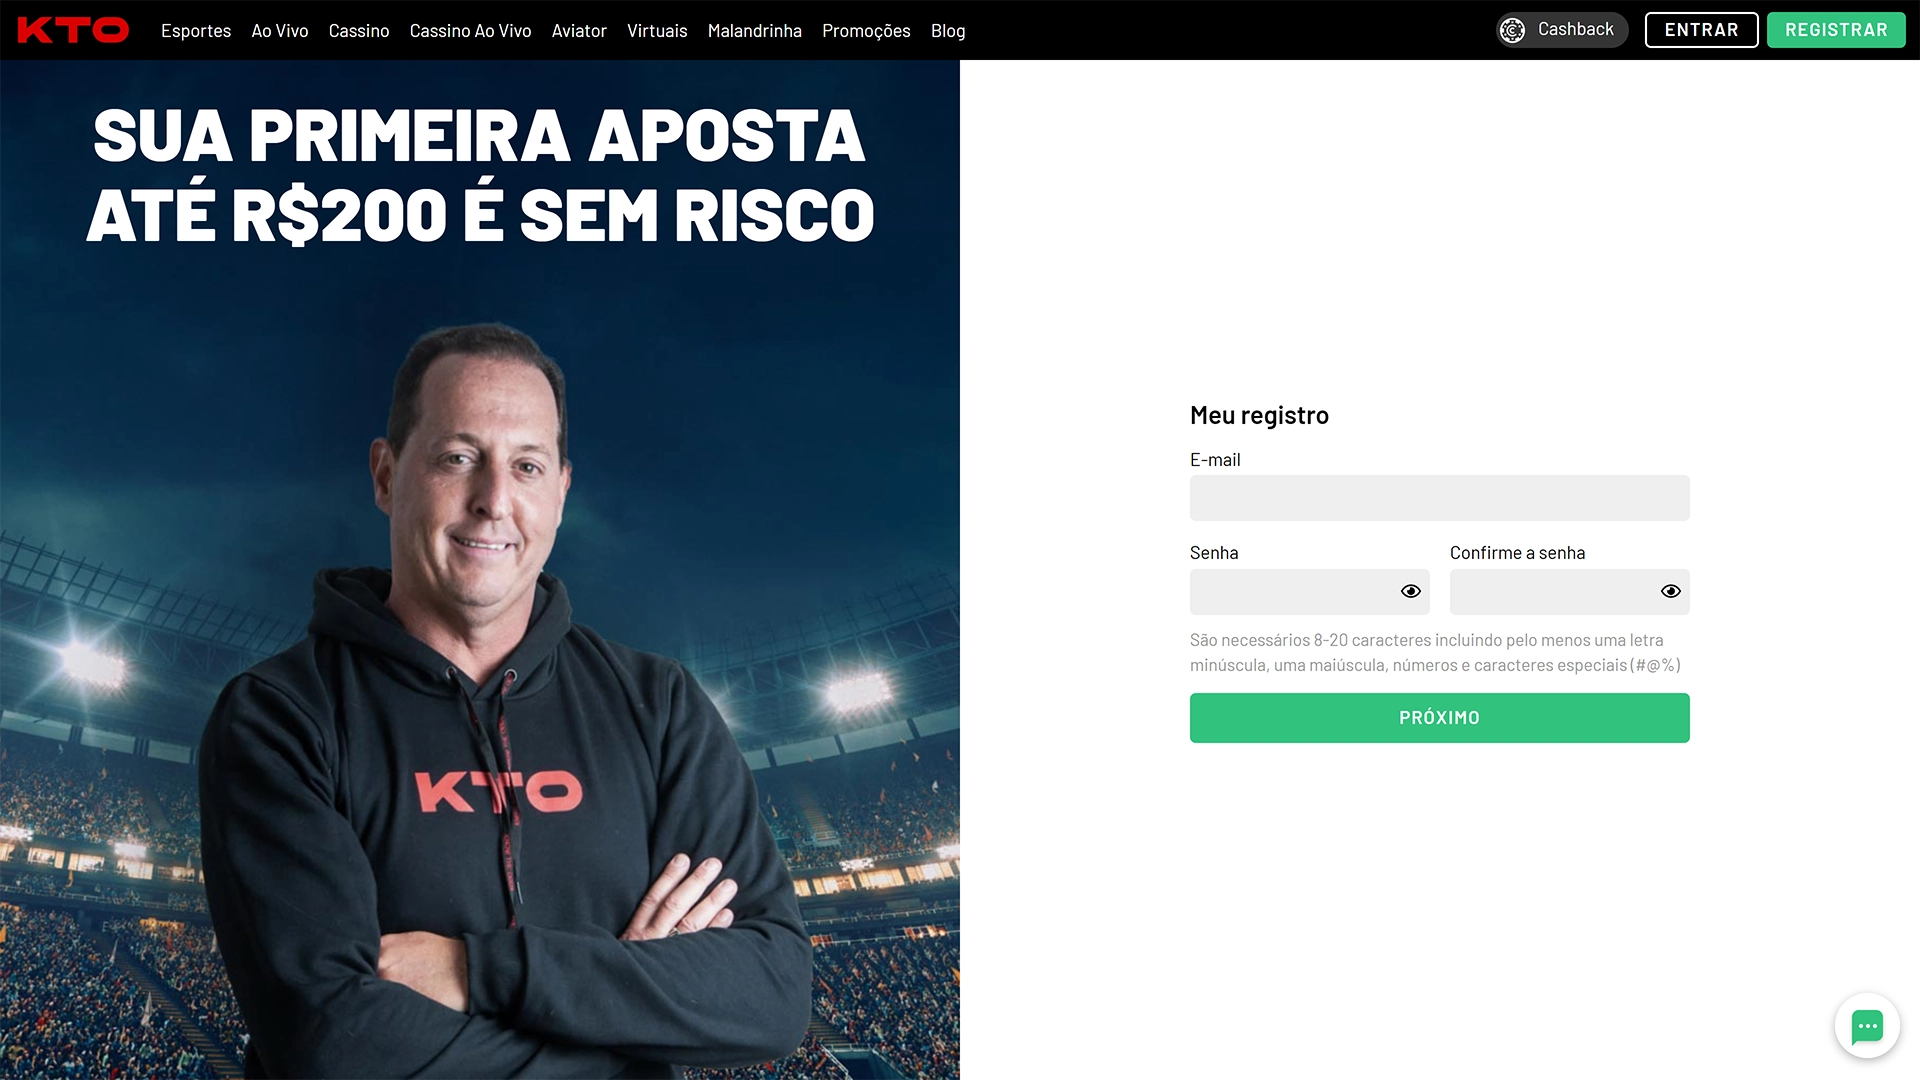 Métodos de pagamento aceitos pelas casas de apostas no Brasil